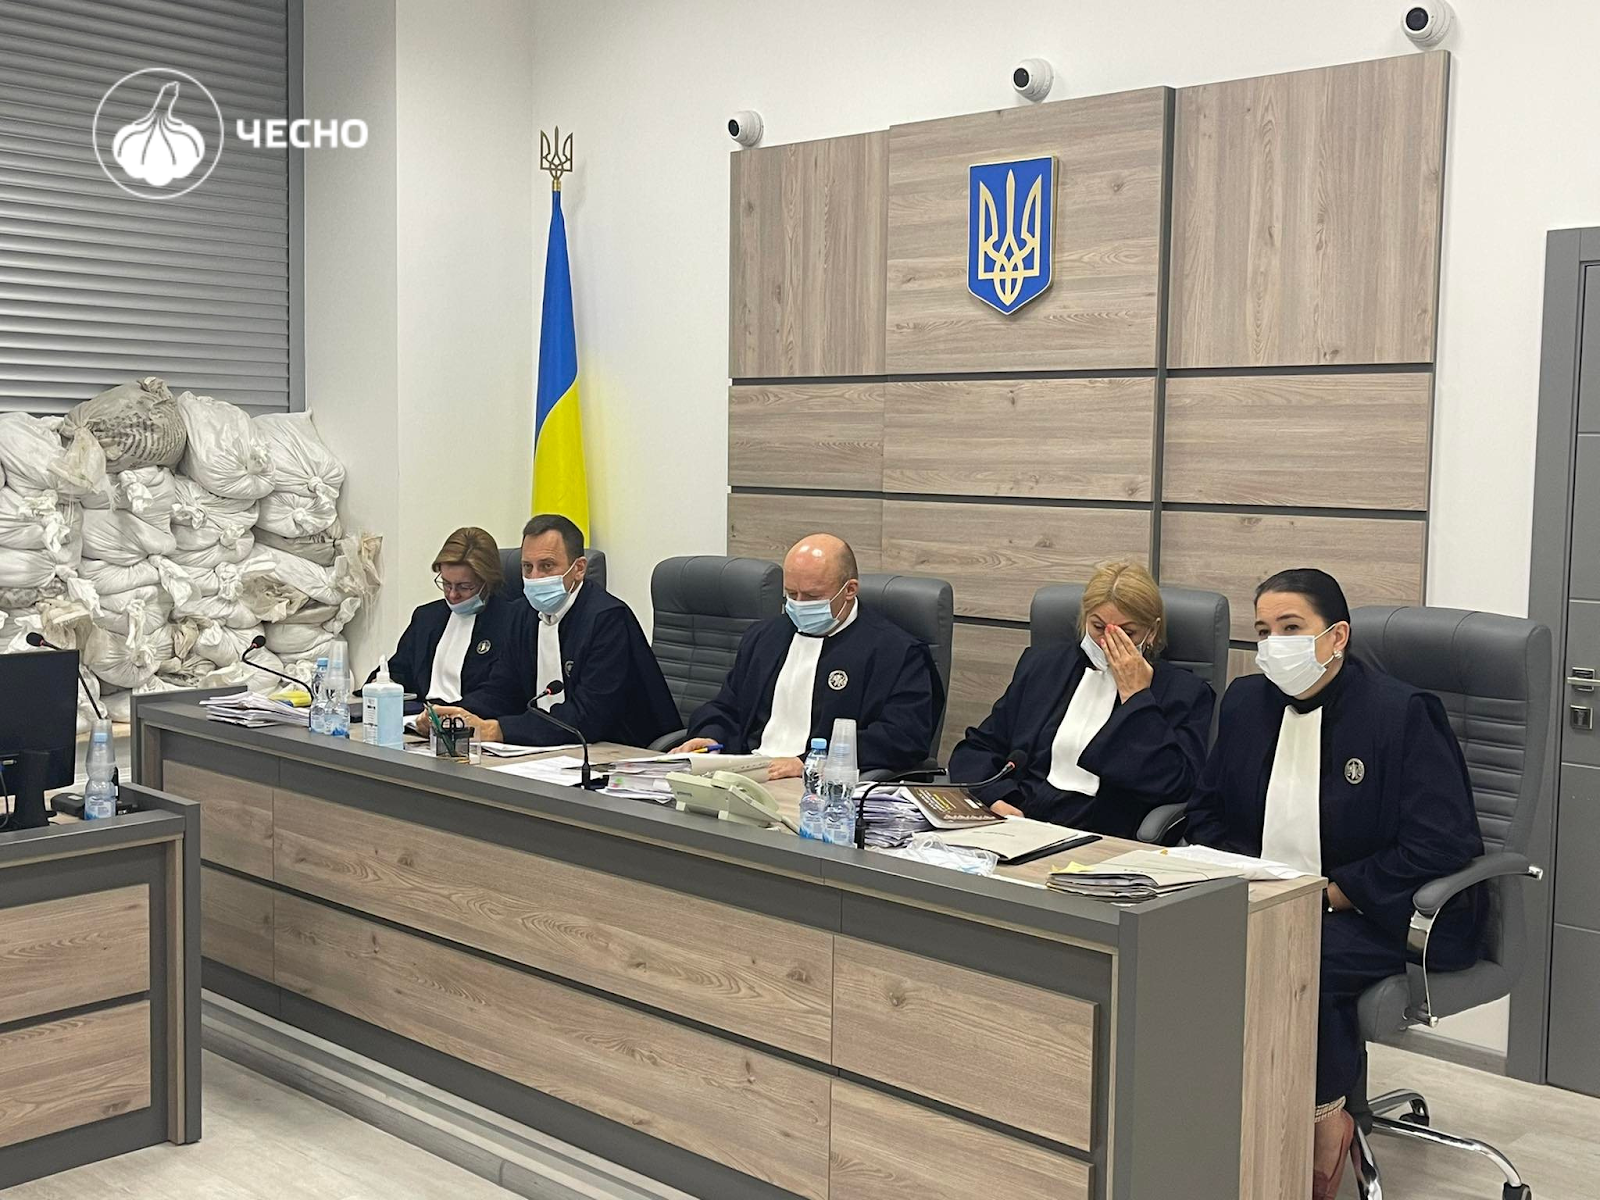 Верховний Суд остаточно заборонив діяльність "Партії Шарія" в Україні. 6 вересня найвища судова інстанція залишила без задоволення апеляційну скаргу юристів цієї політичної сили.